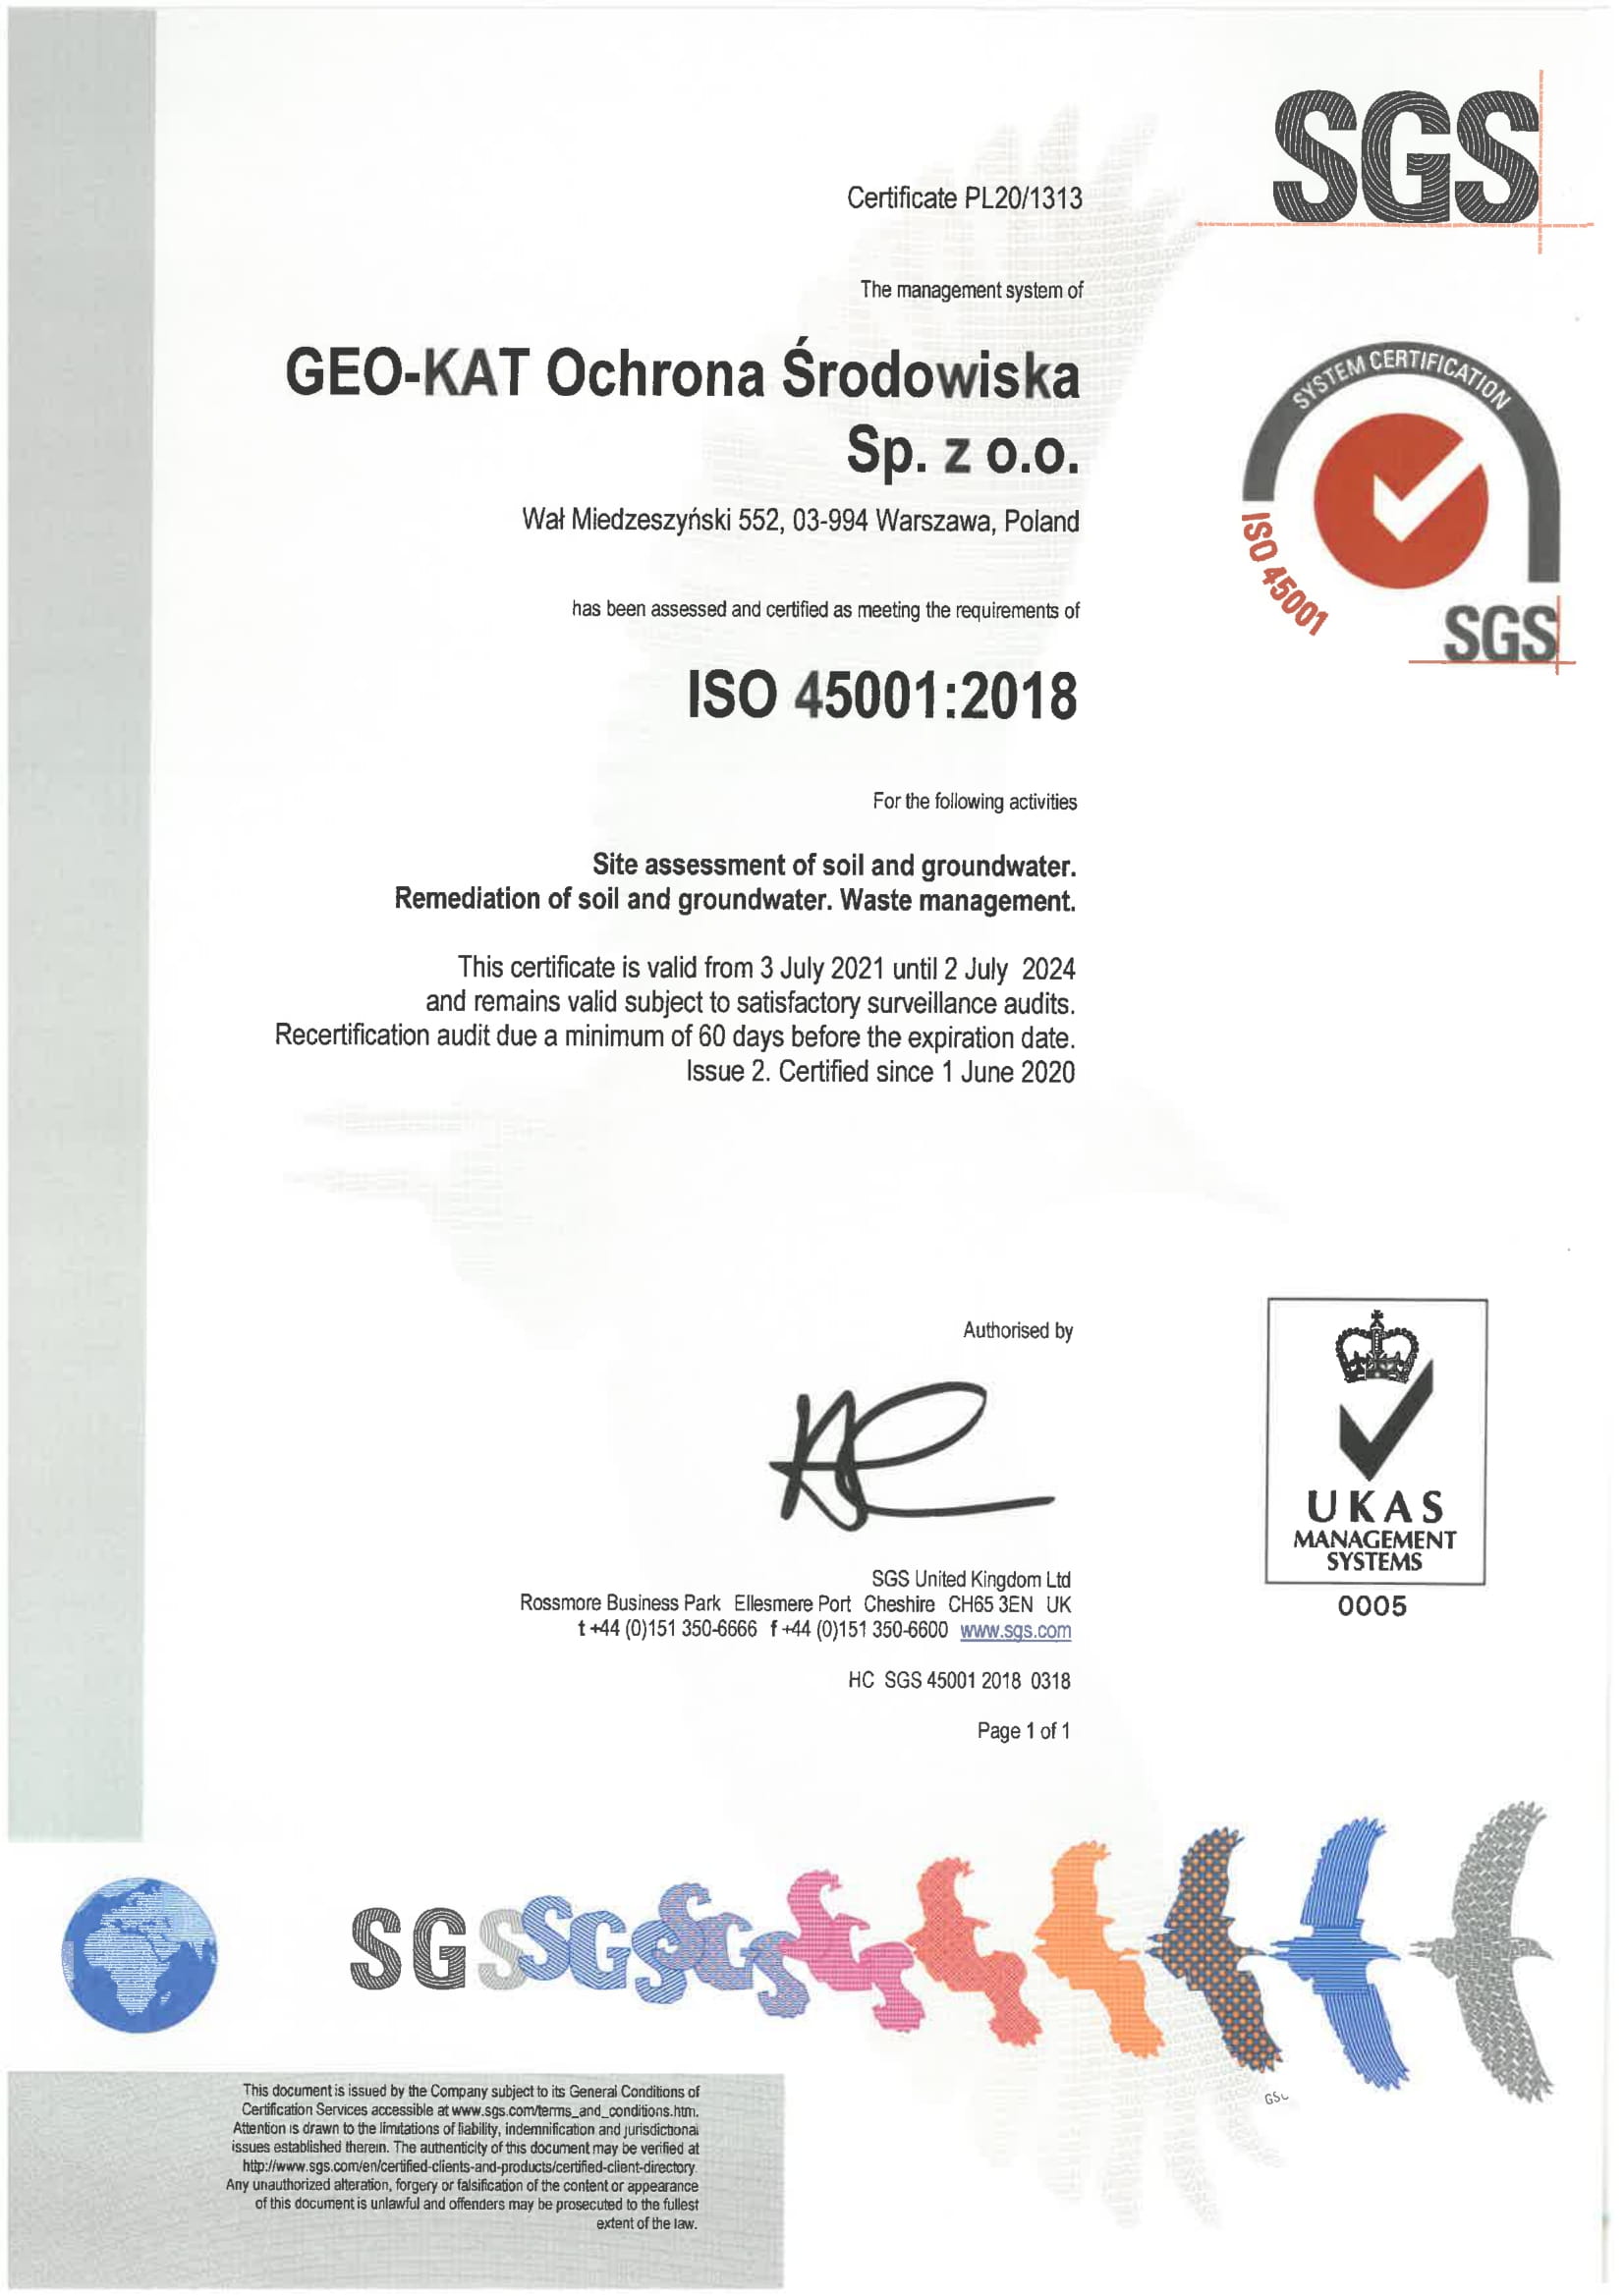 GEO-KAT Ochrona Środowiska Sp. z o.o. – ISO 45001:2018